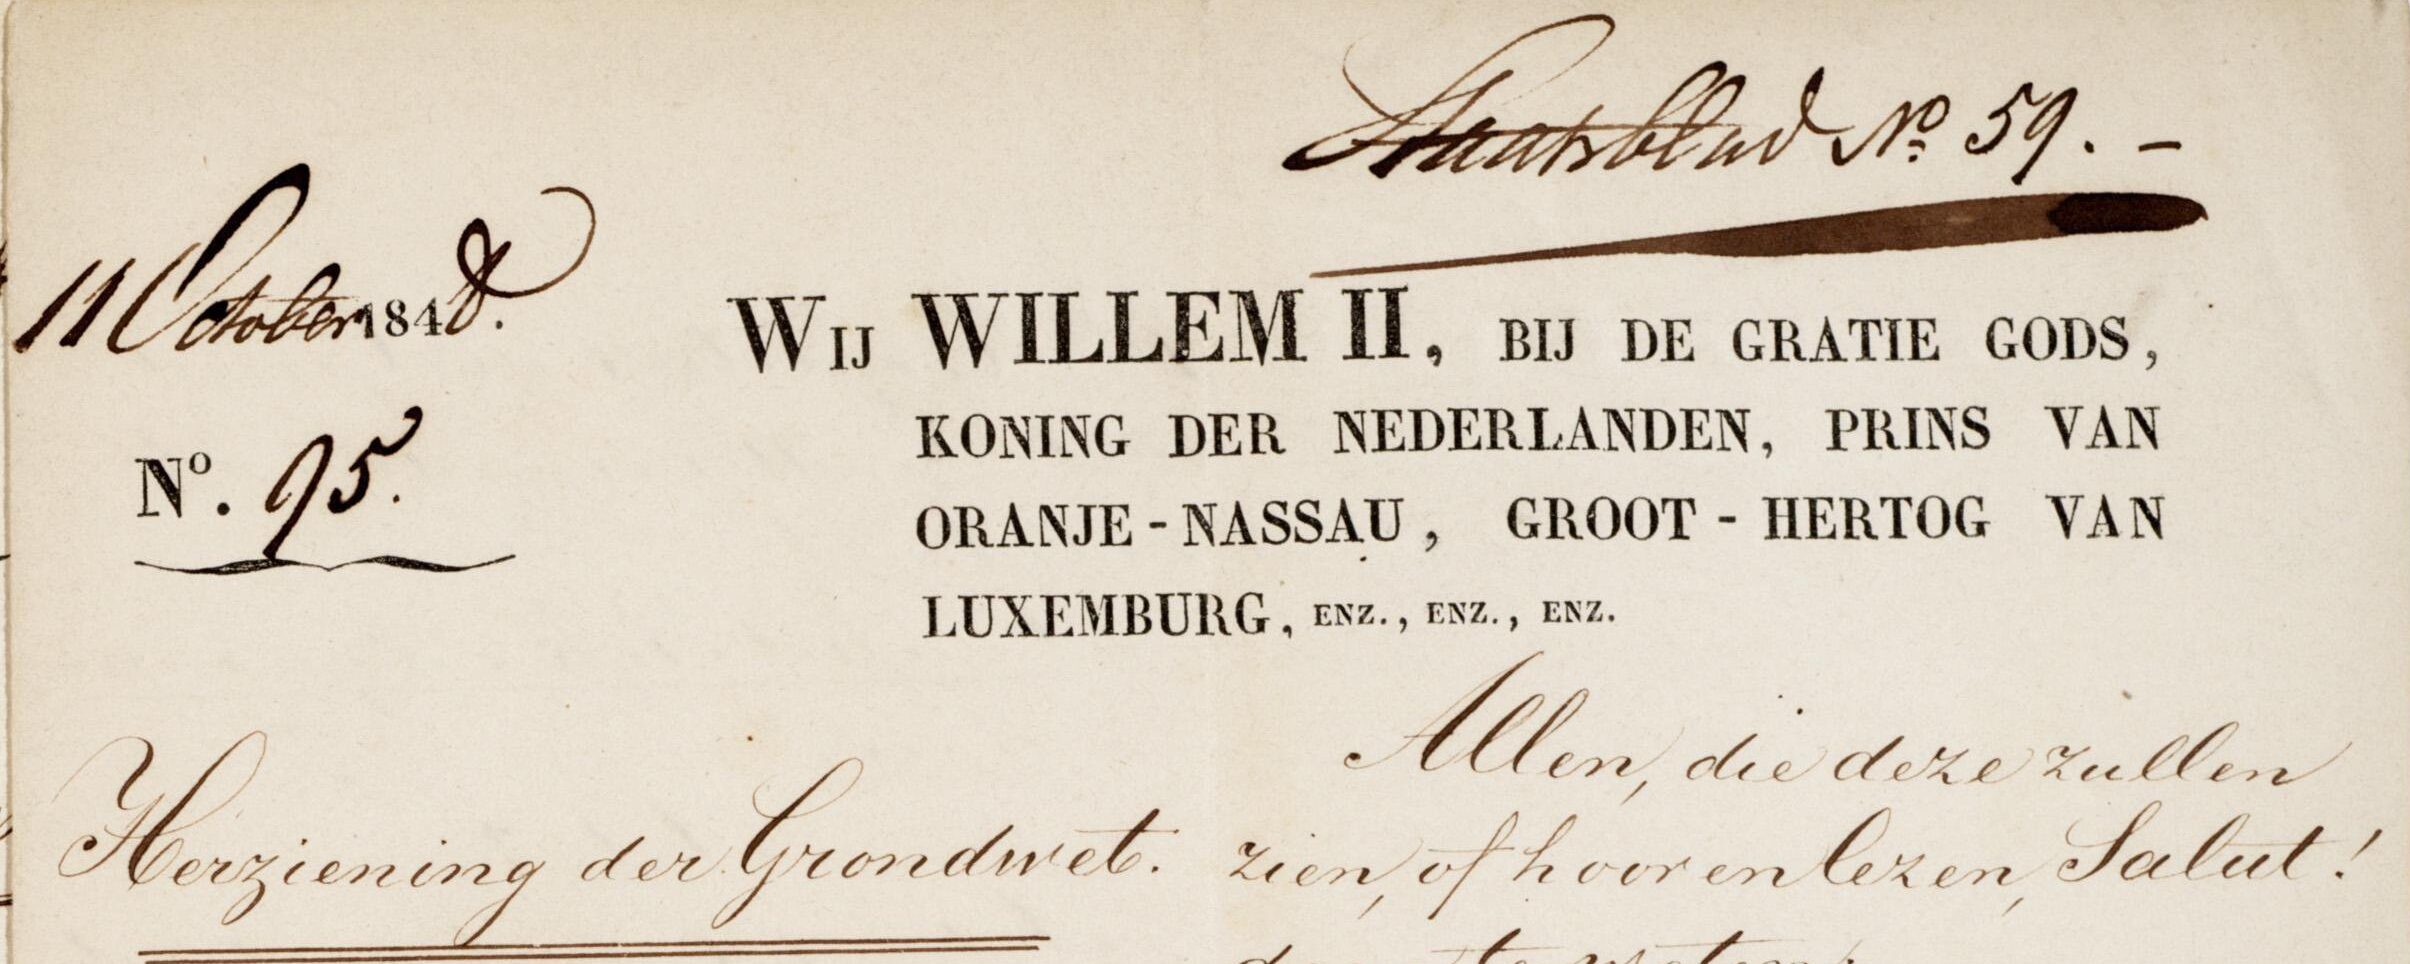 De Grondwetsherziening van 1848 legde de basis voor het huidige stelsel van parlementaire democratie in Nederland (1848, Nationaal Archief)